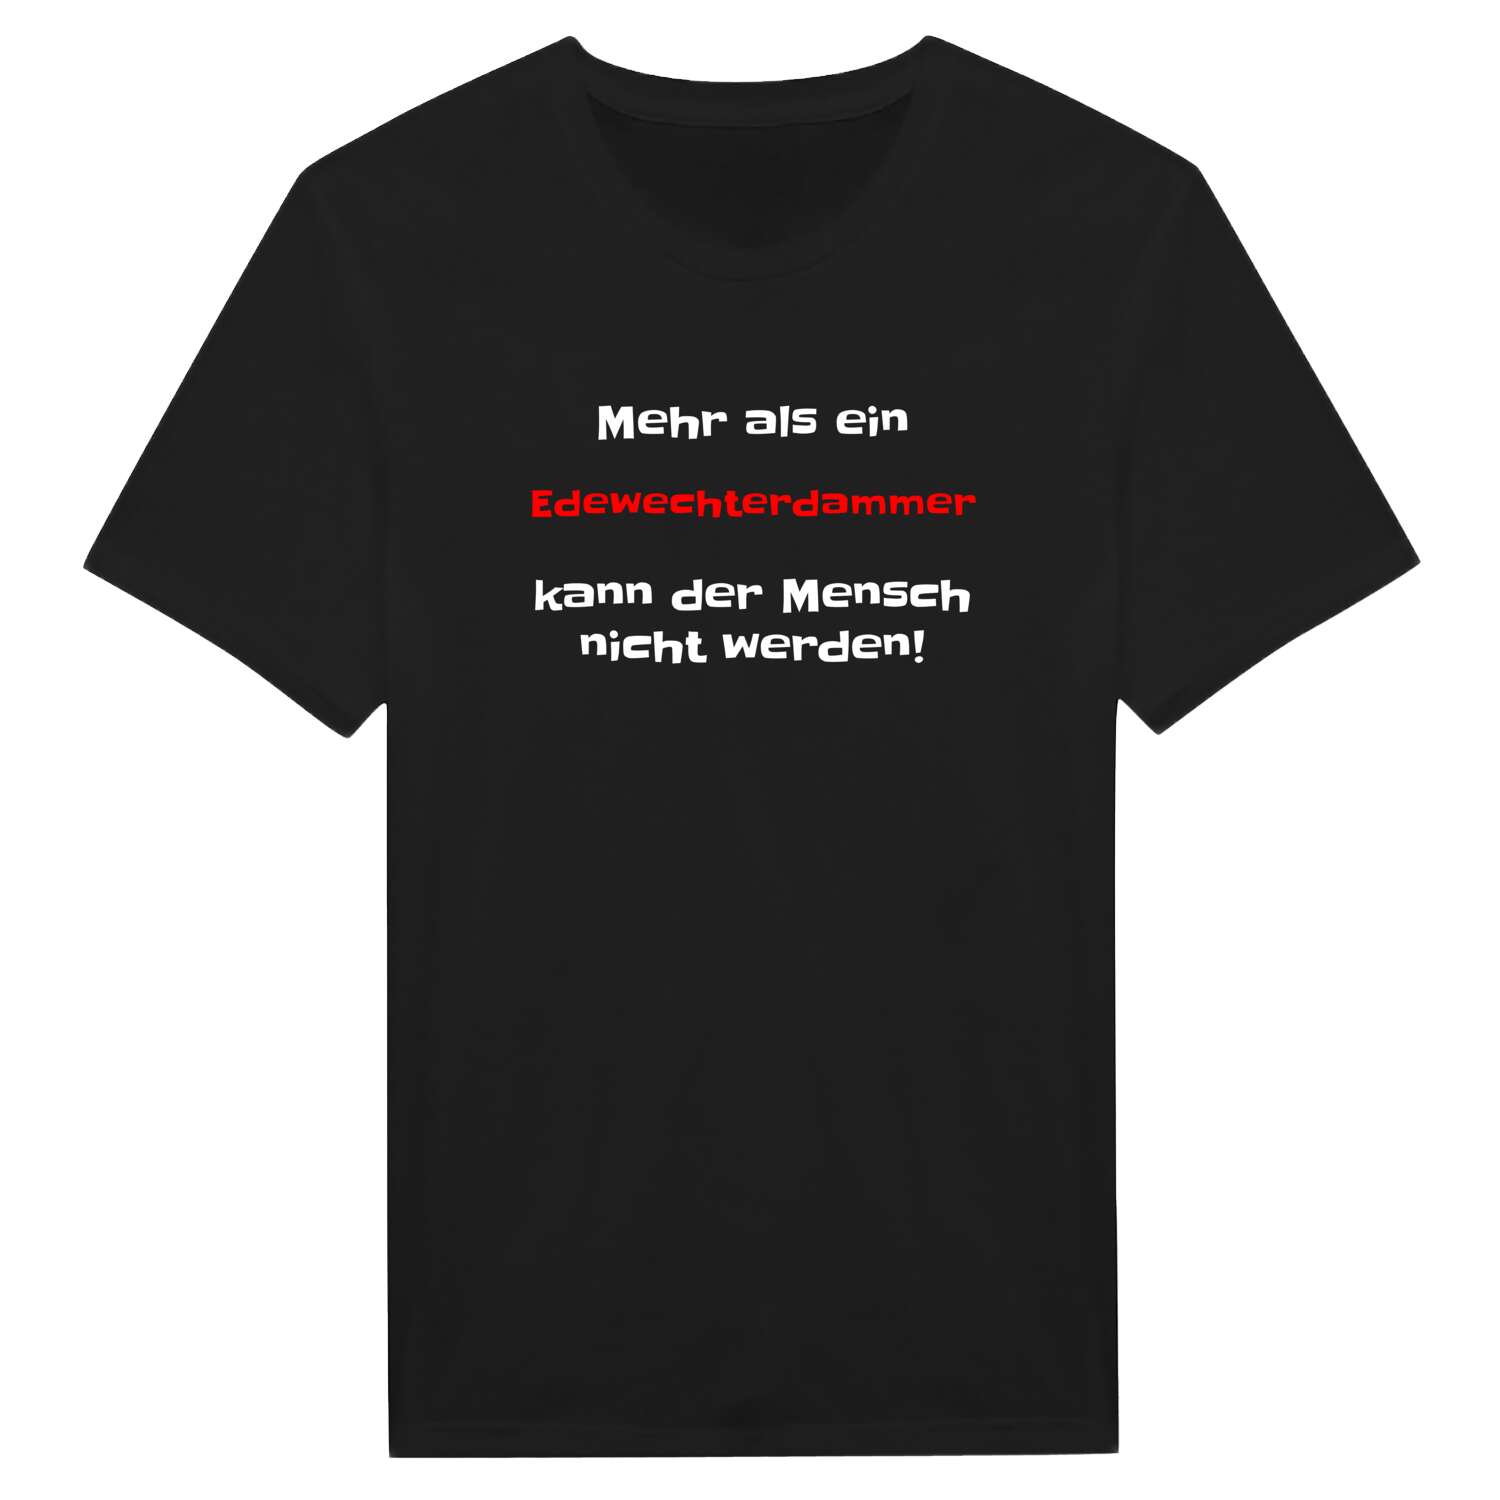 Edewechterdamm T-Shirt »Mehr als ein«